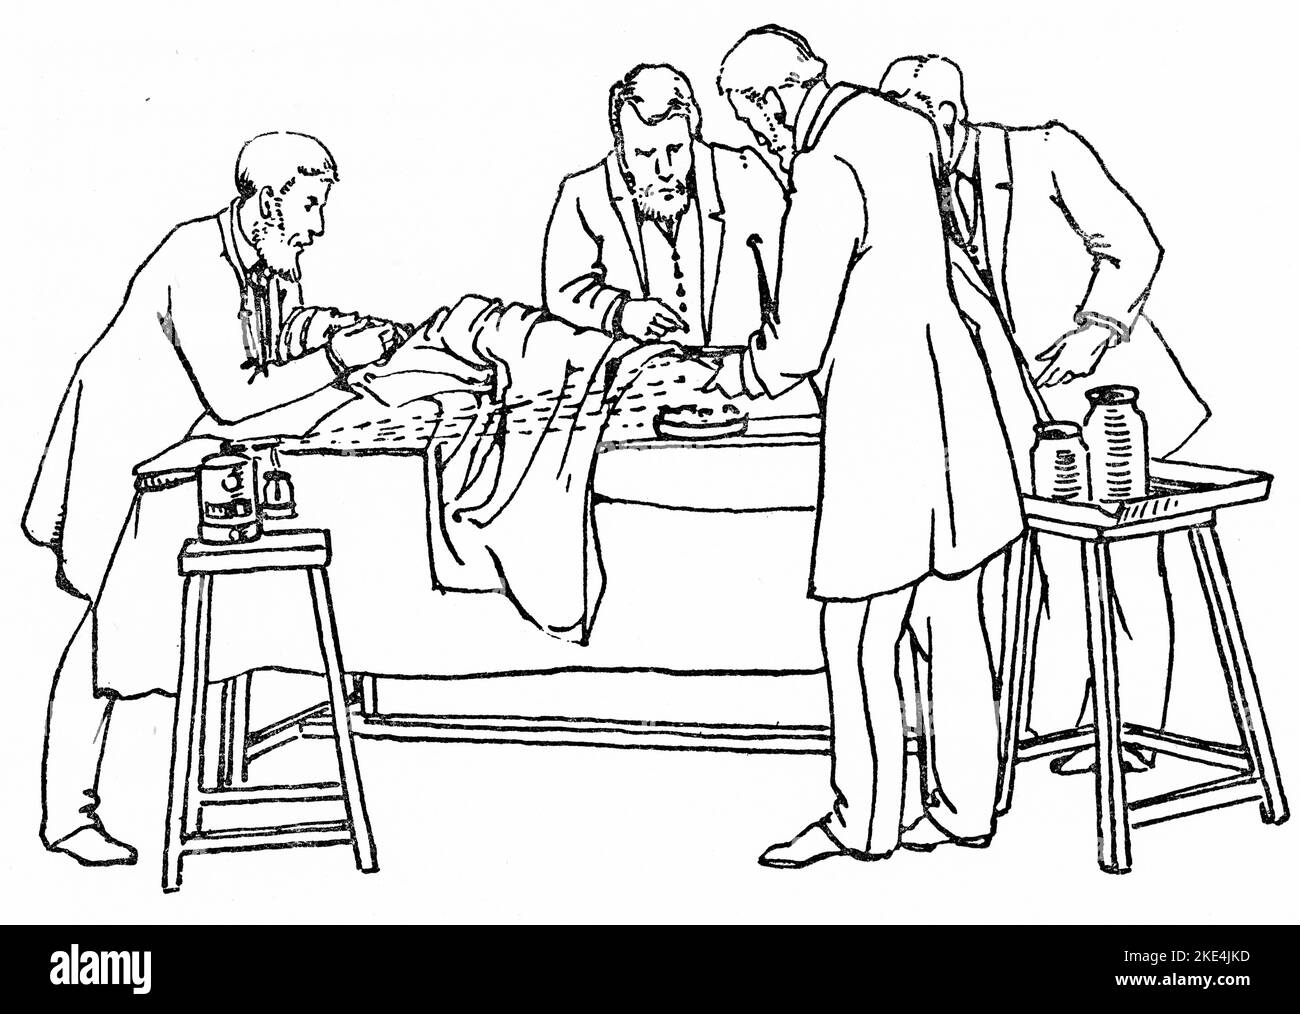 Funzionamento di 1880 con spray a Lister in uso. L'apparecchio di spruzzatura di vapore carbolico di Joseph Lister era un grande progresso nella chirurgia antisettica ed è stato usato per spruzzare una soluzione di acido carbolico cinque per cento nelle sale operatorie durante l'ambulatorio. Joseph Lister (1827-1912) è stato un chirurgo britannico, uno scienziato medico, un patologo sperimentale e un pioniere della chirurgia antisettica e della medicina preventiva. Dalla "chirurgia antisettica: I suoi principi, pratica, storia e risultati" di William Watson Cheyne (1852-1932). Foto Stock